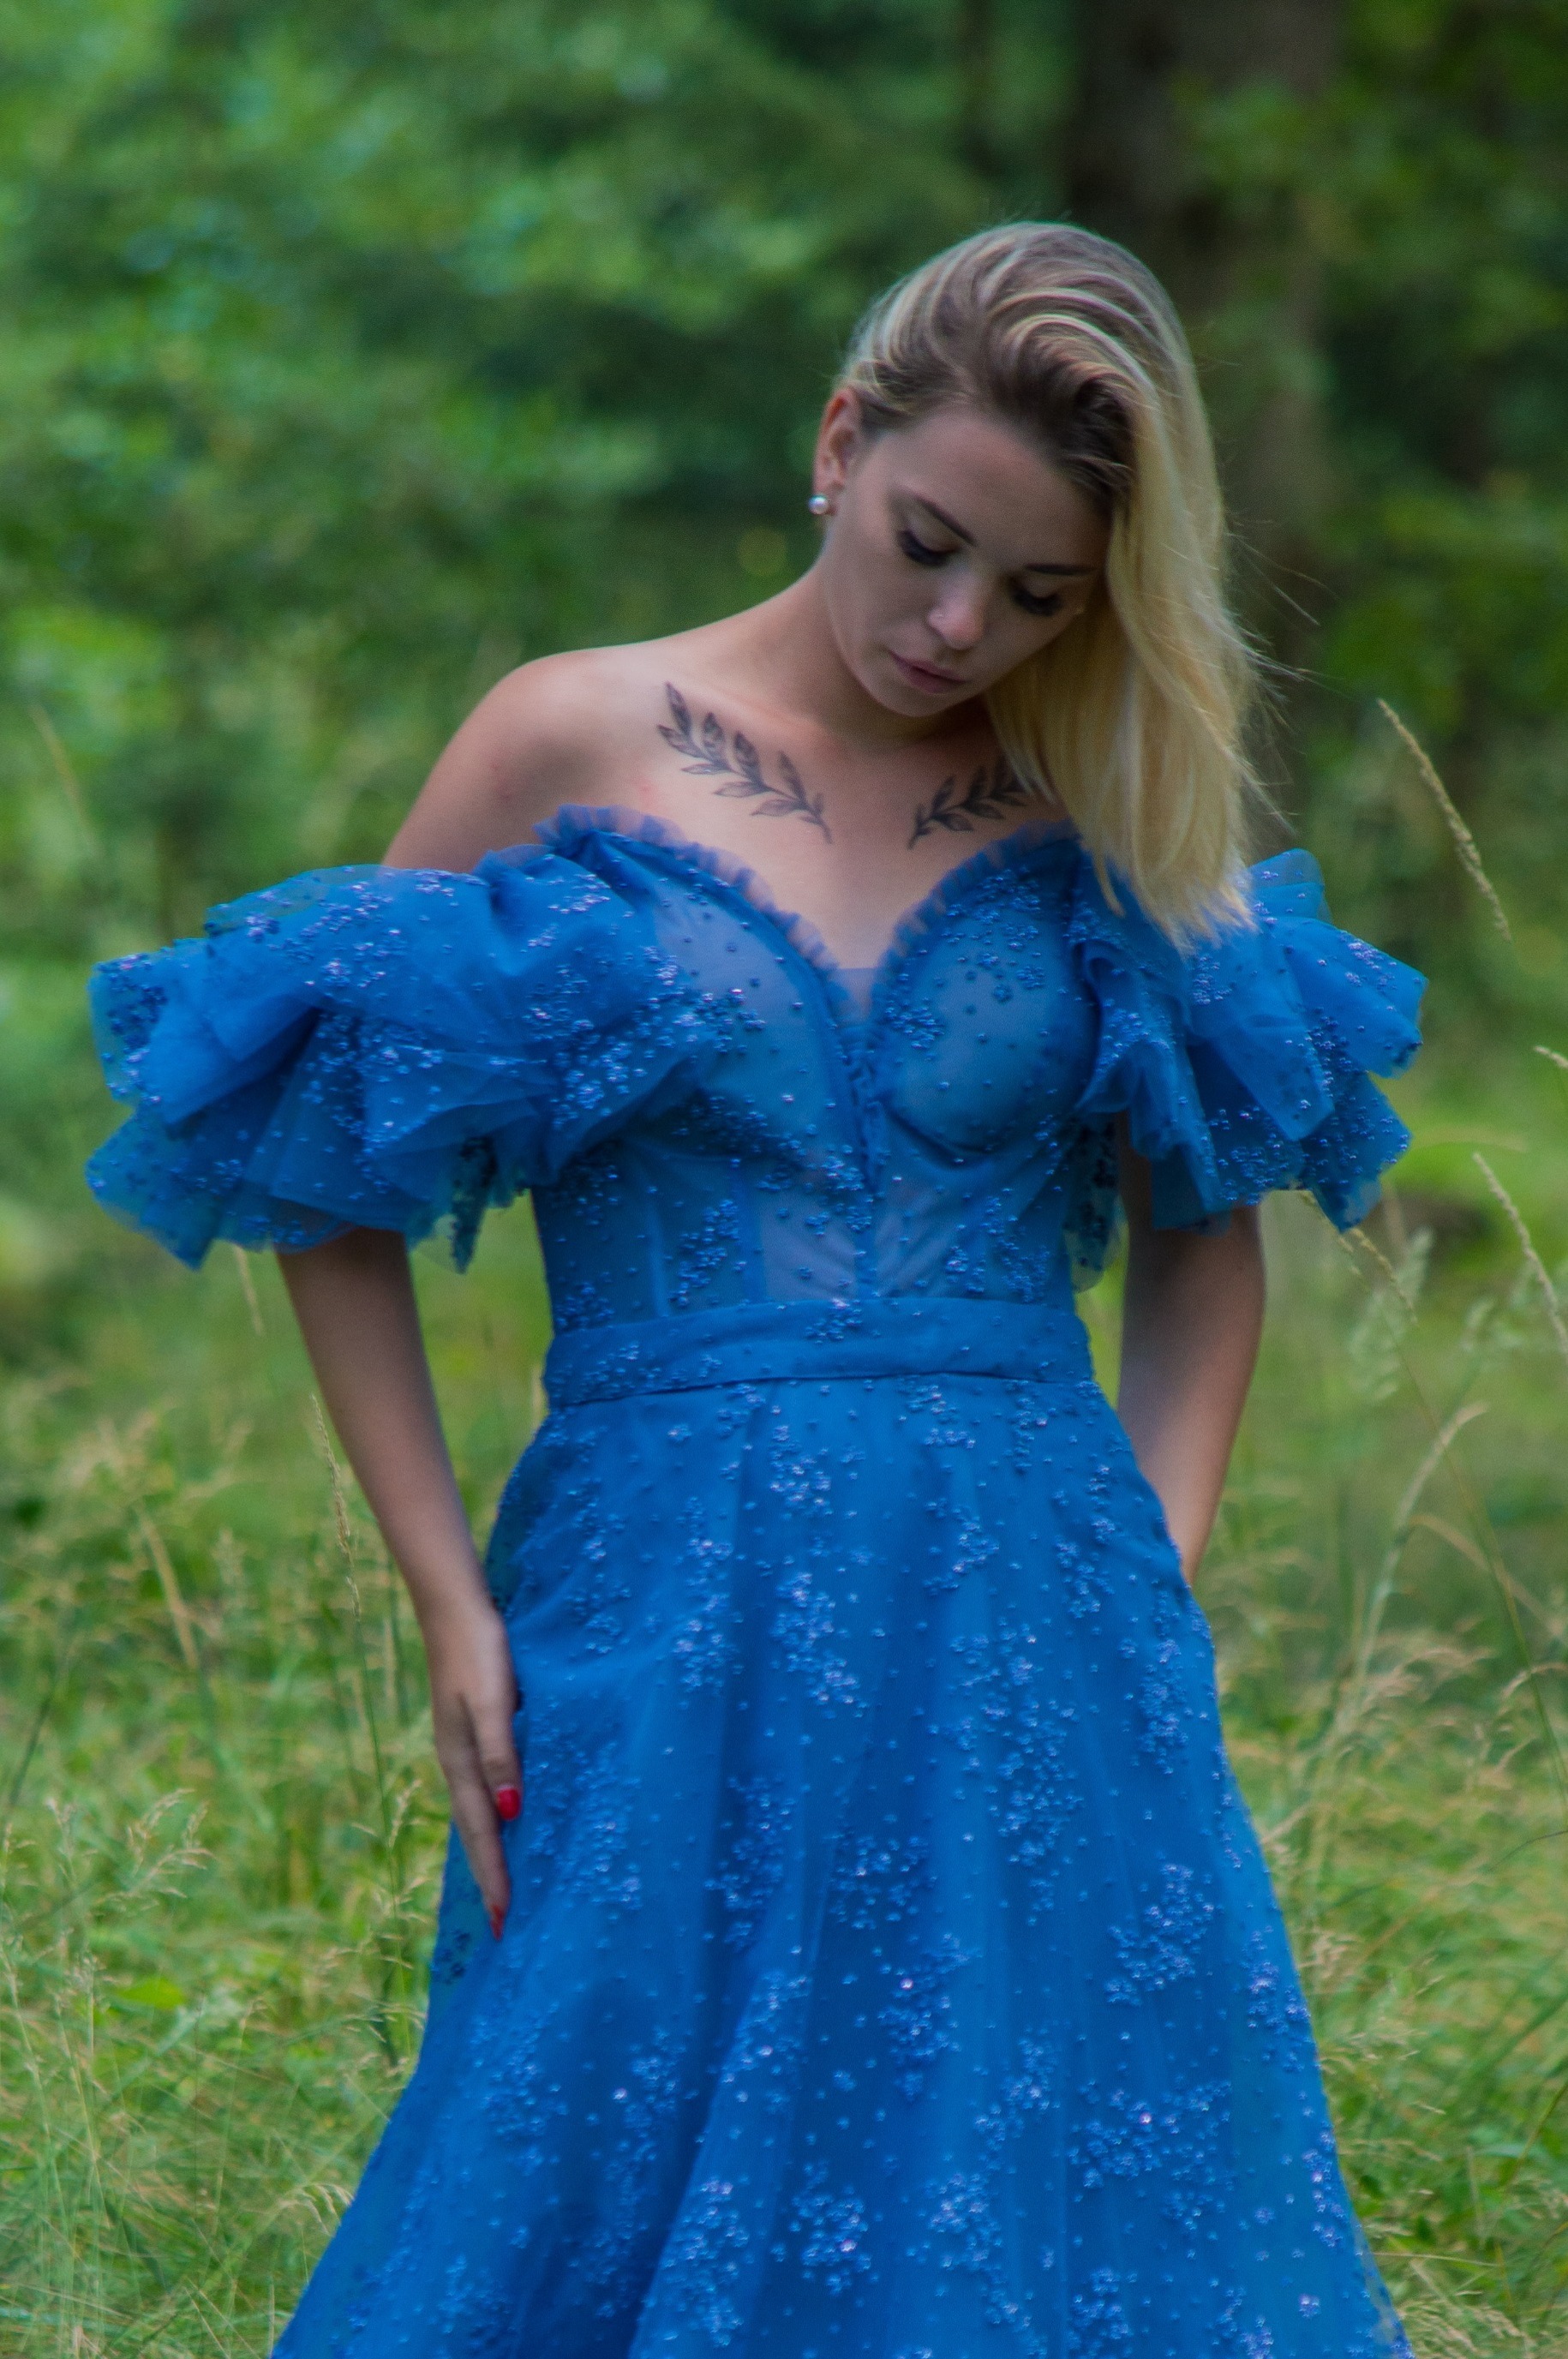 Obrázek ženy s modrými společenskými šaty